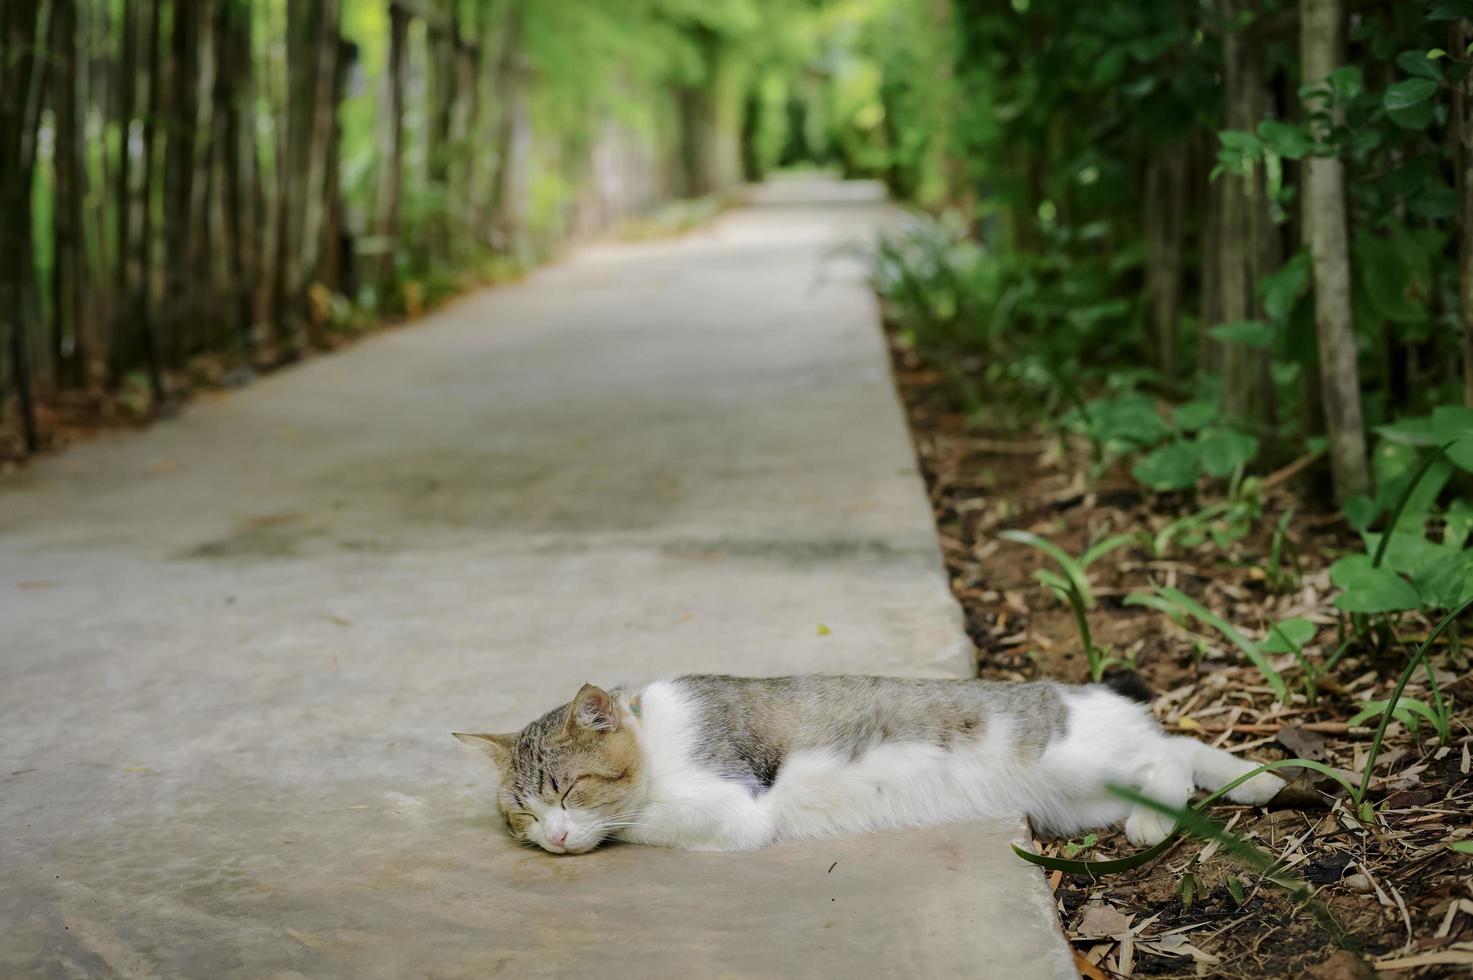 Retrato de gato dormido con fondo borroso de jardín de bambú y piso de cemento foto